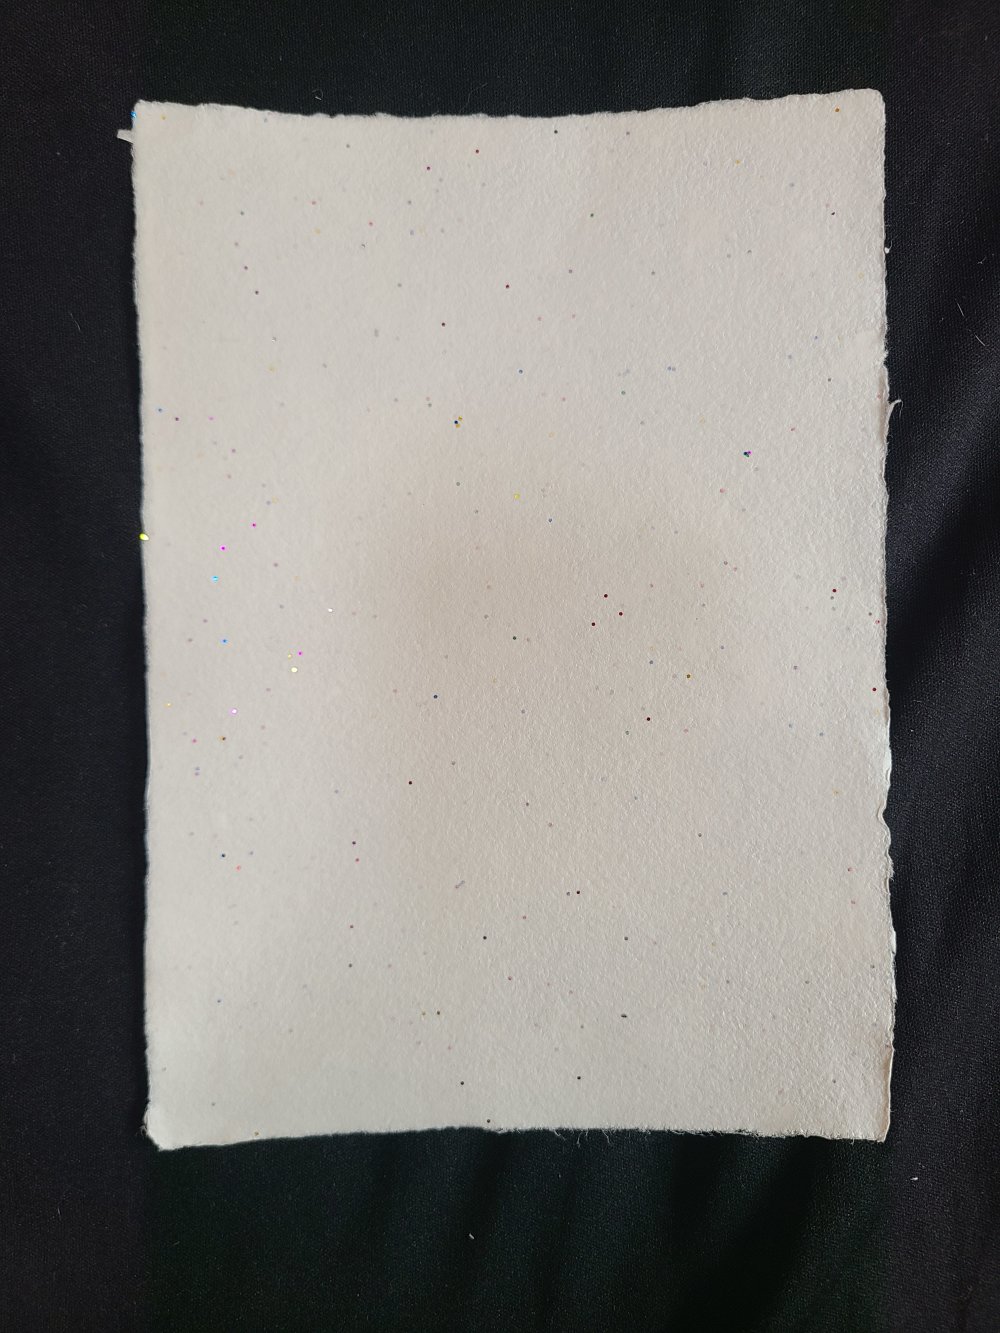 Feuille de papier aquarelle coton/chanvre - grain fin - du a6 au